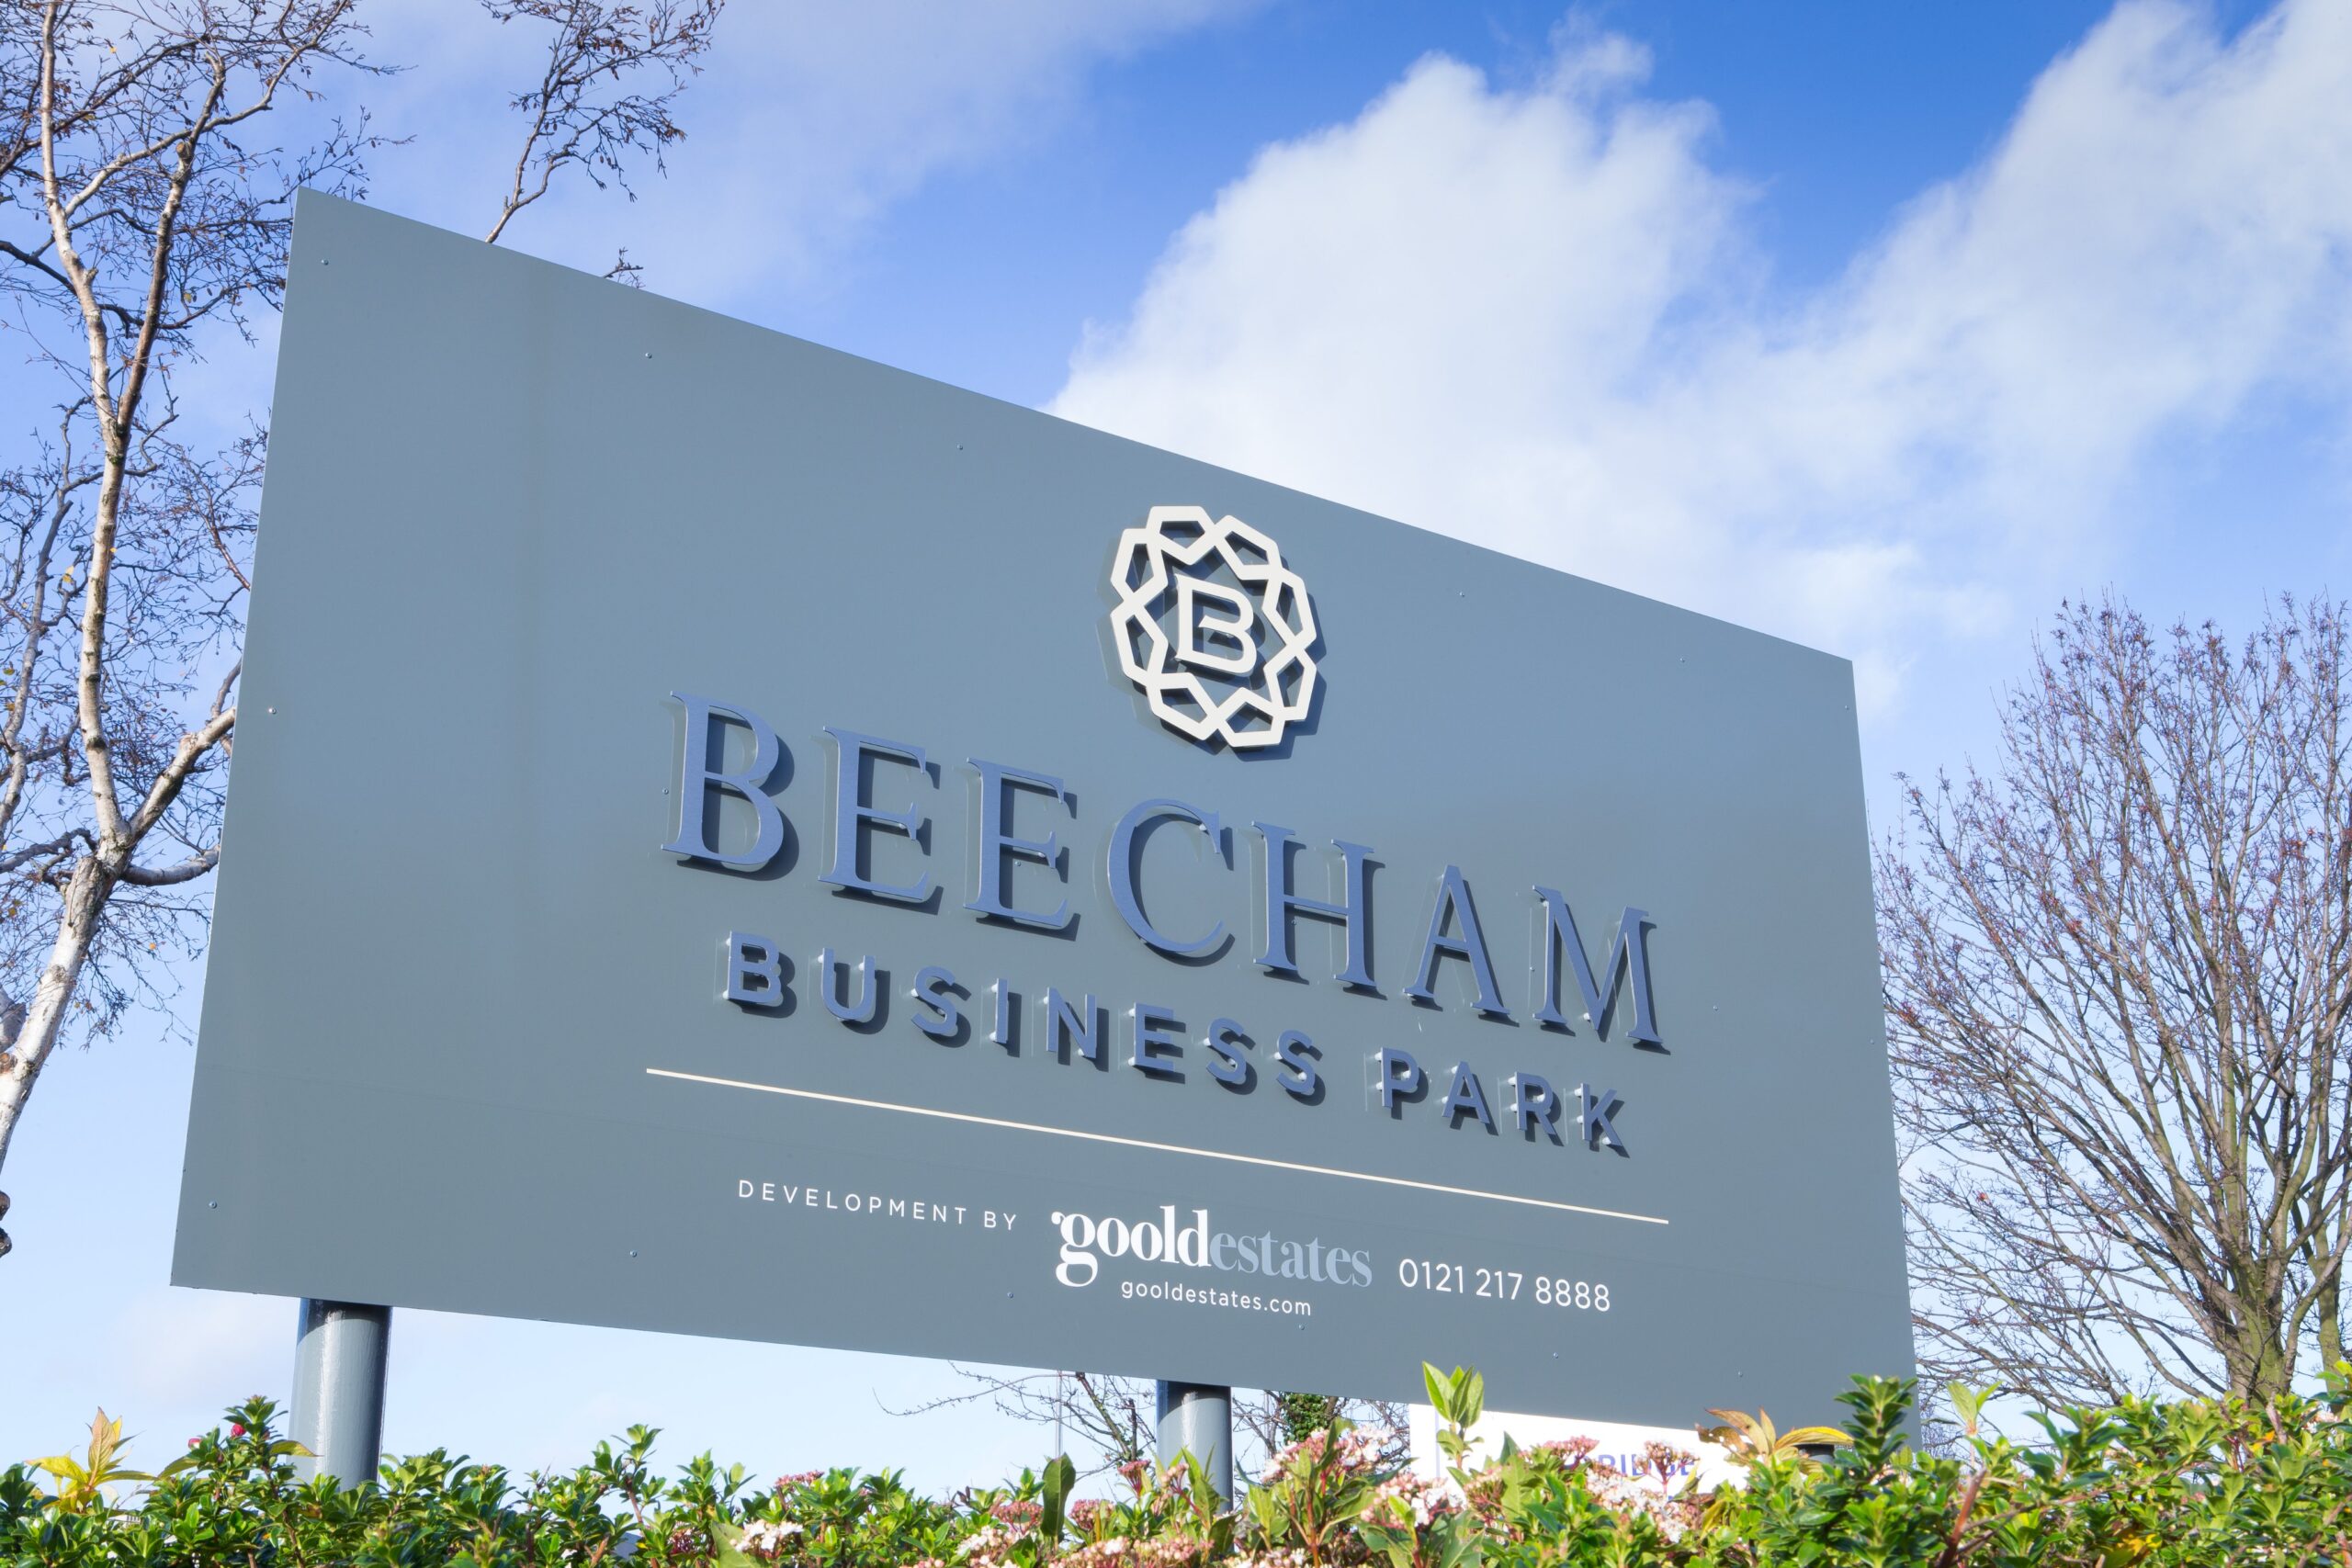 Beecham Business Park sign